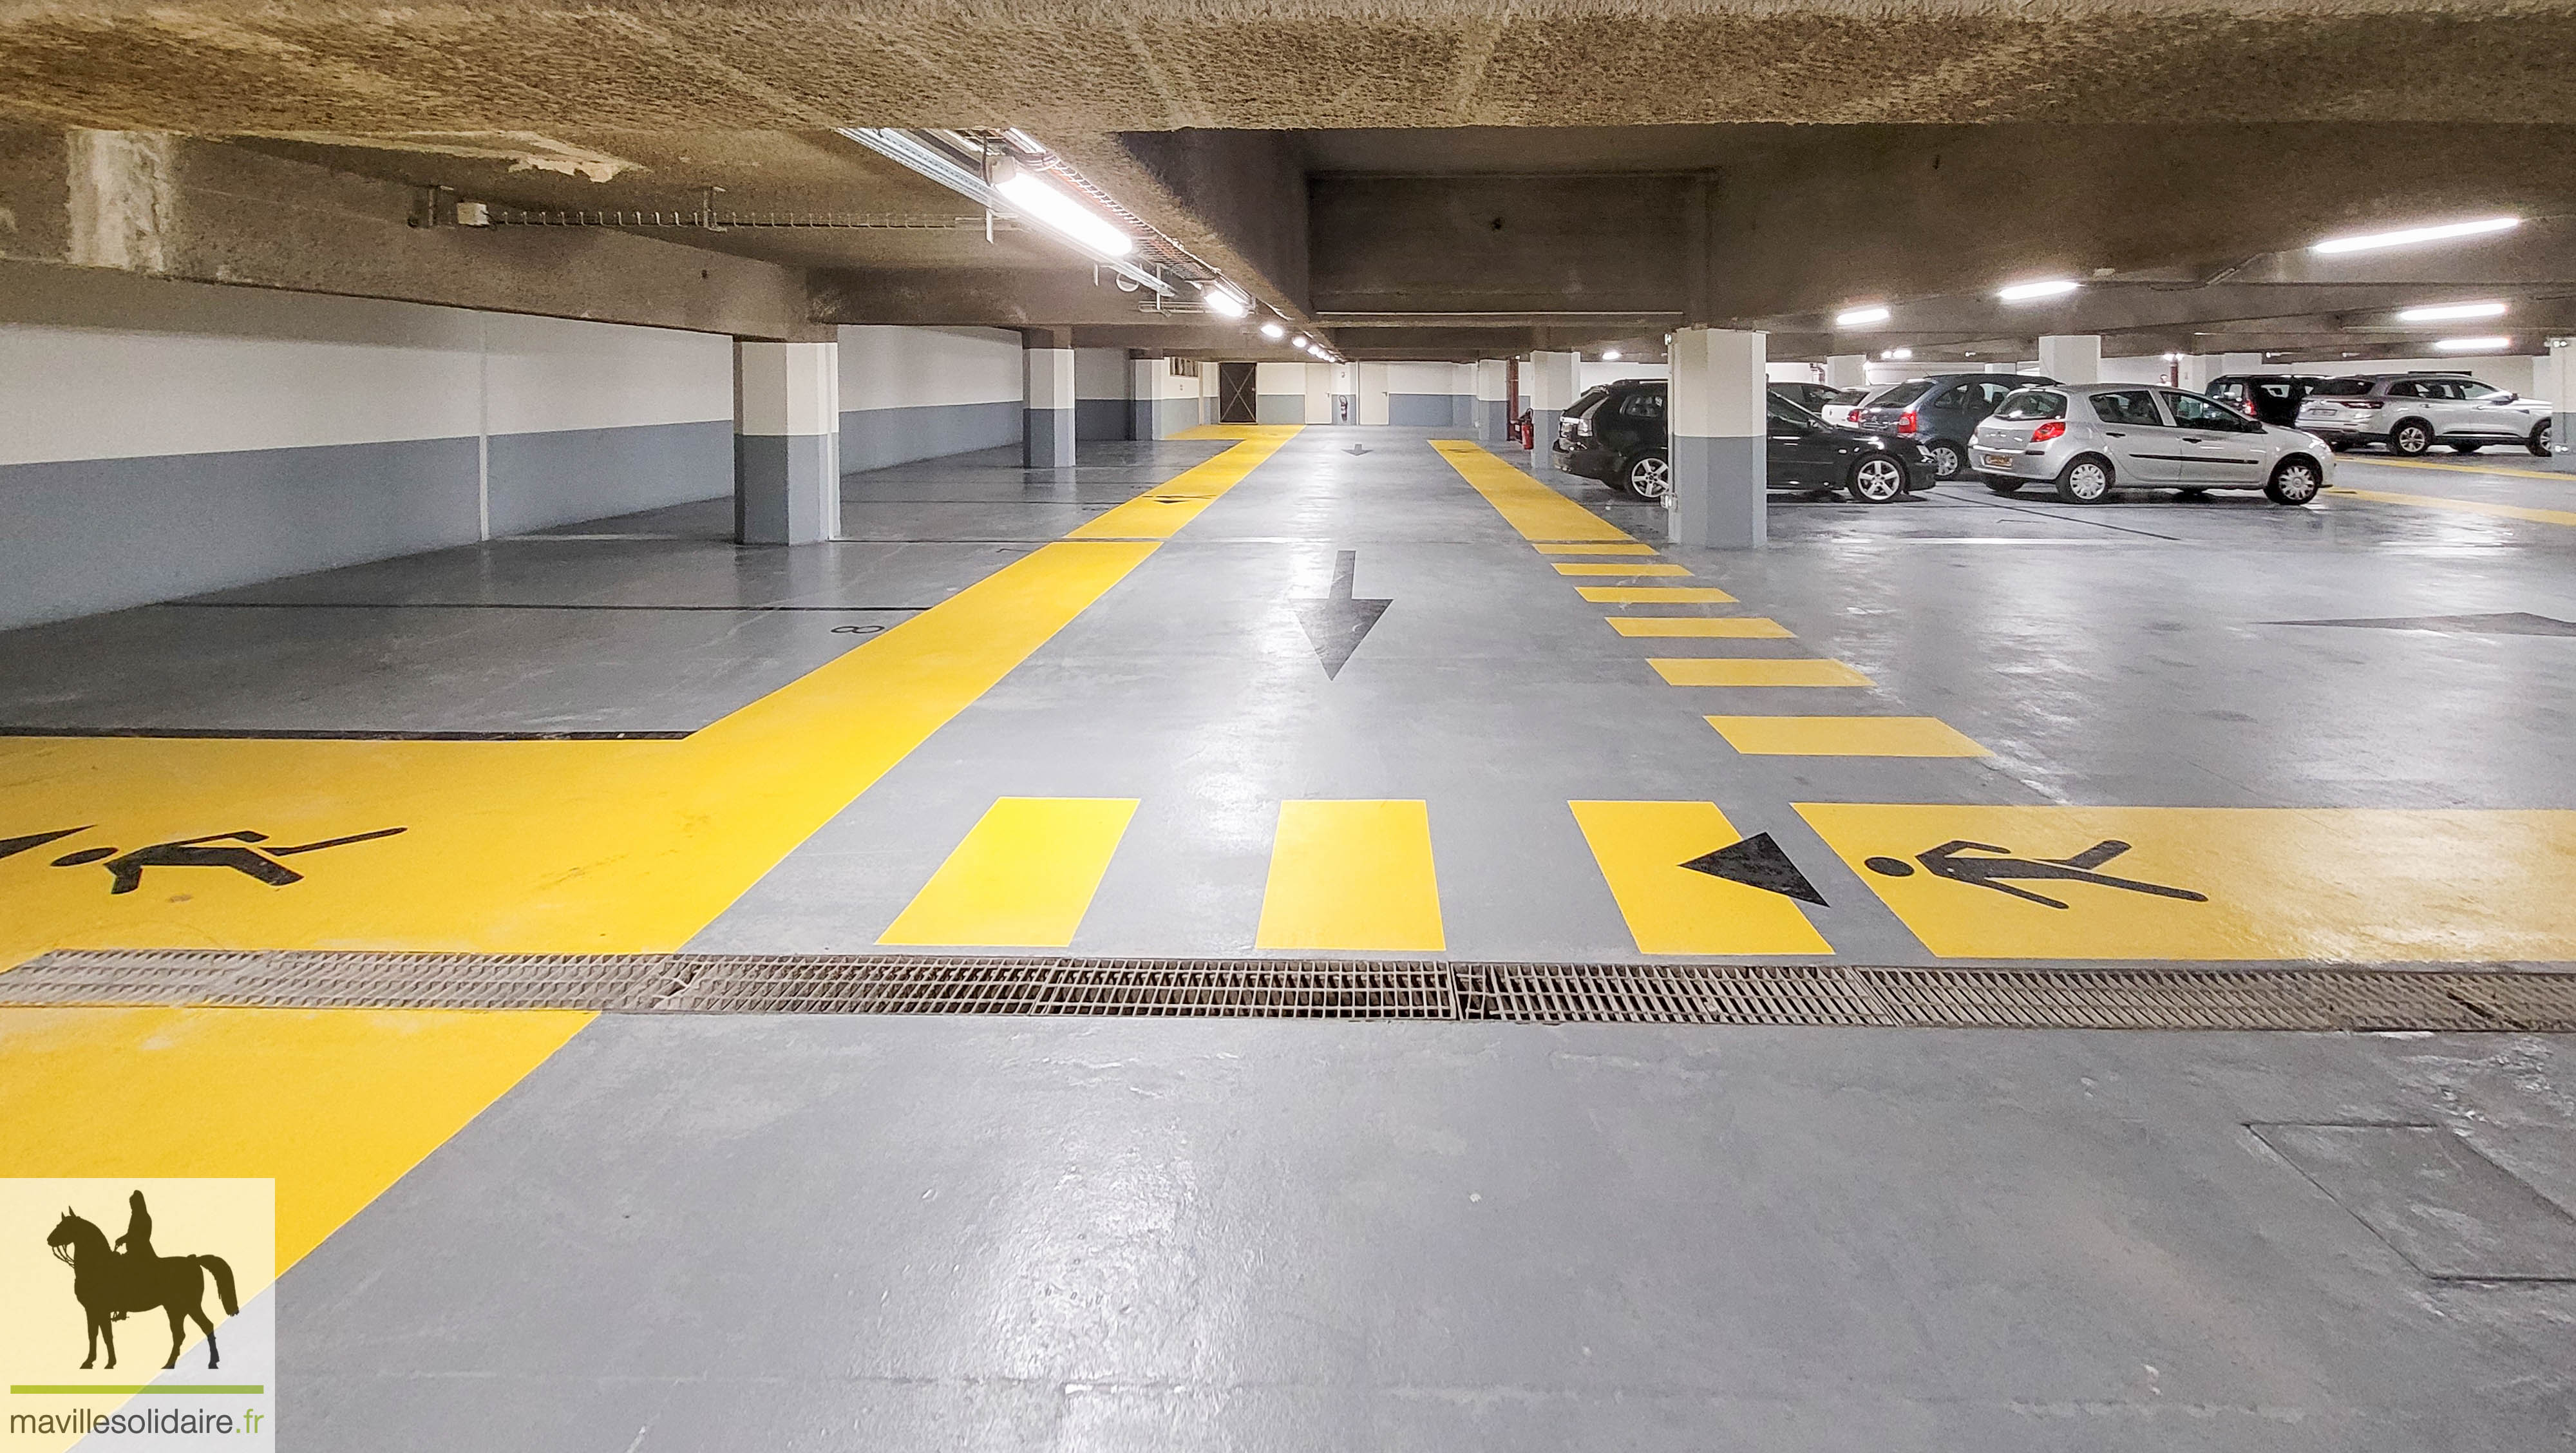 Parking des Halles mavillesolidaire.fr 9 sur 10